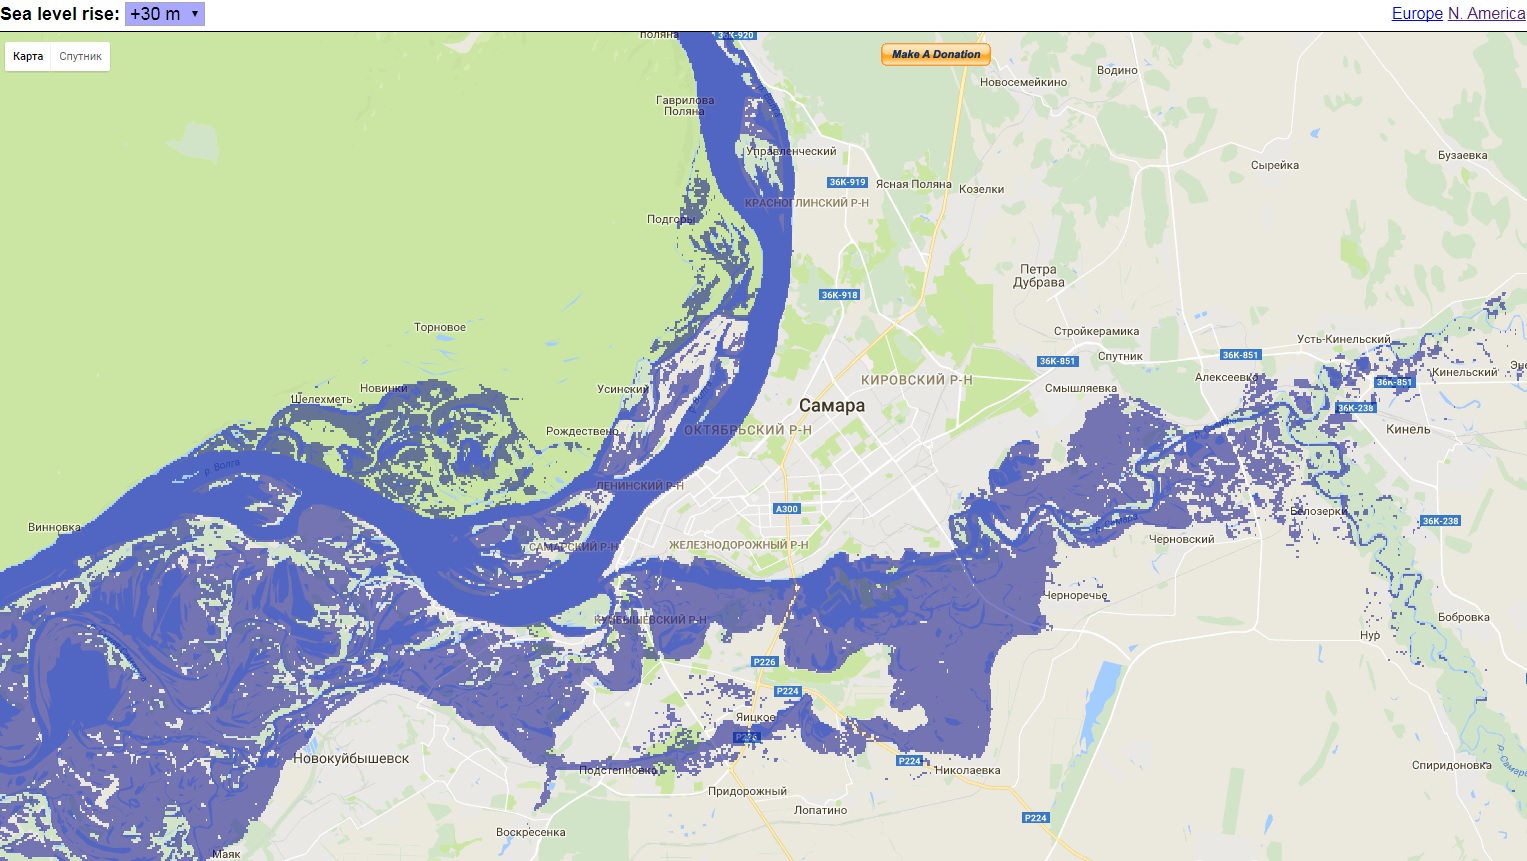 Карта затопления ярославля при прорыве рыбинского водохранилища